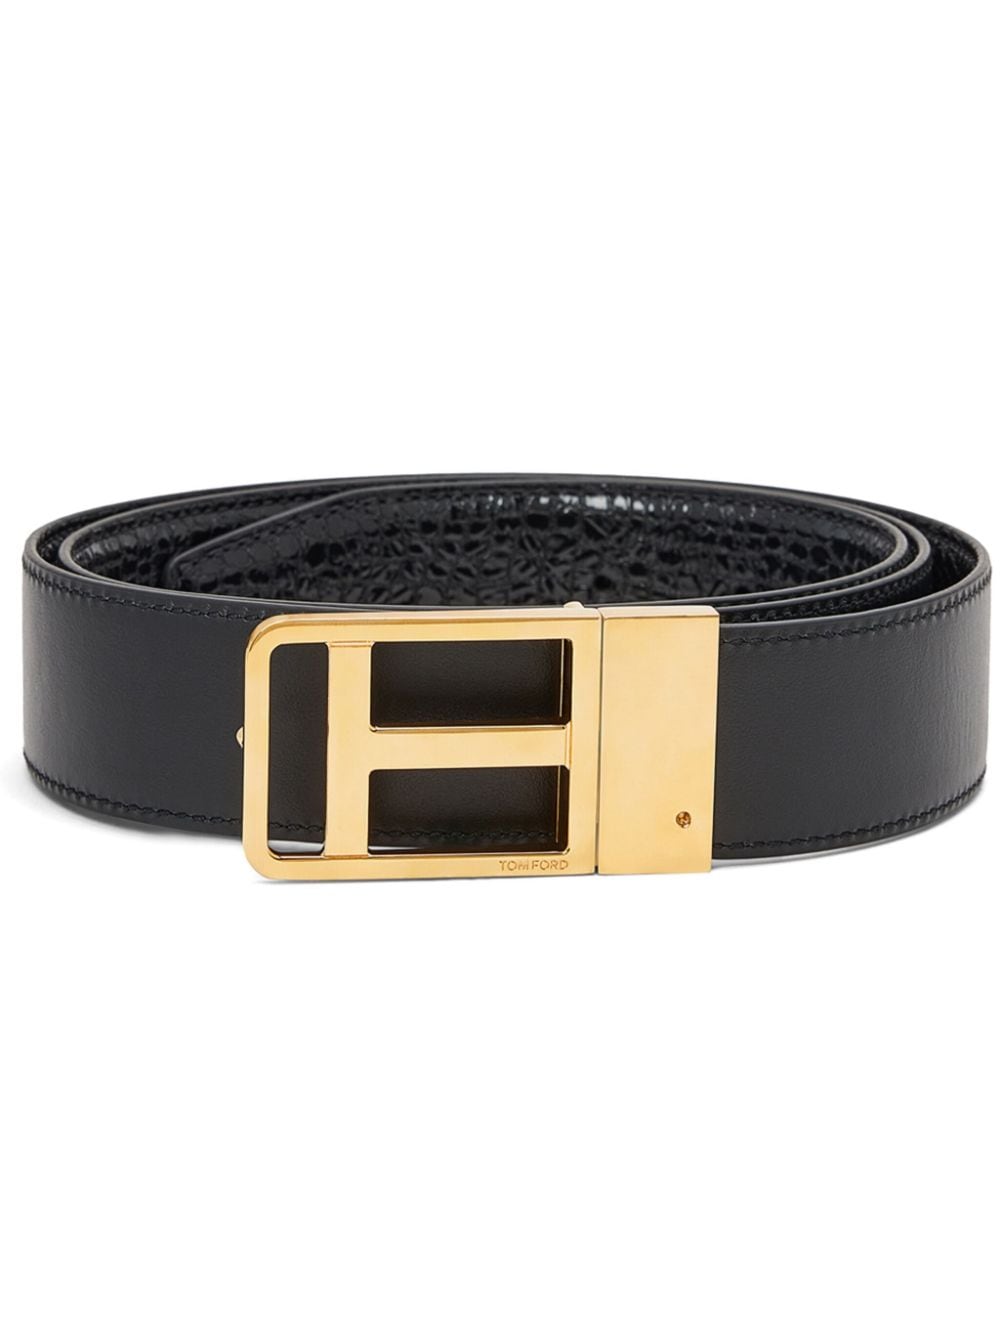 TOM FORD logo-buckle leather belt - Black von TOM FORD